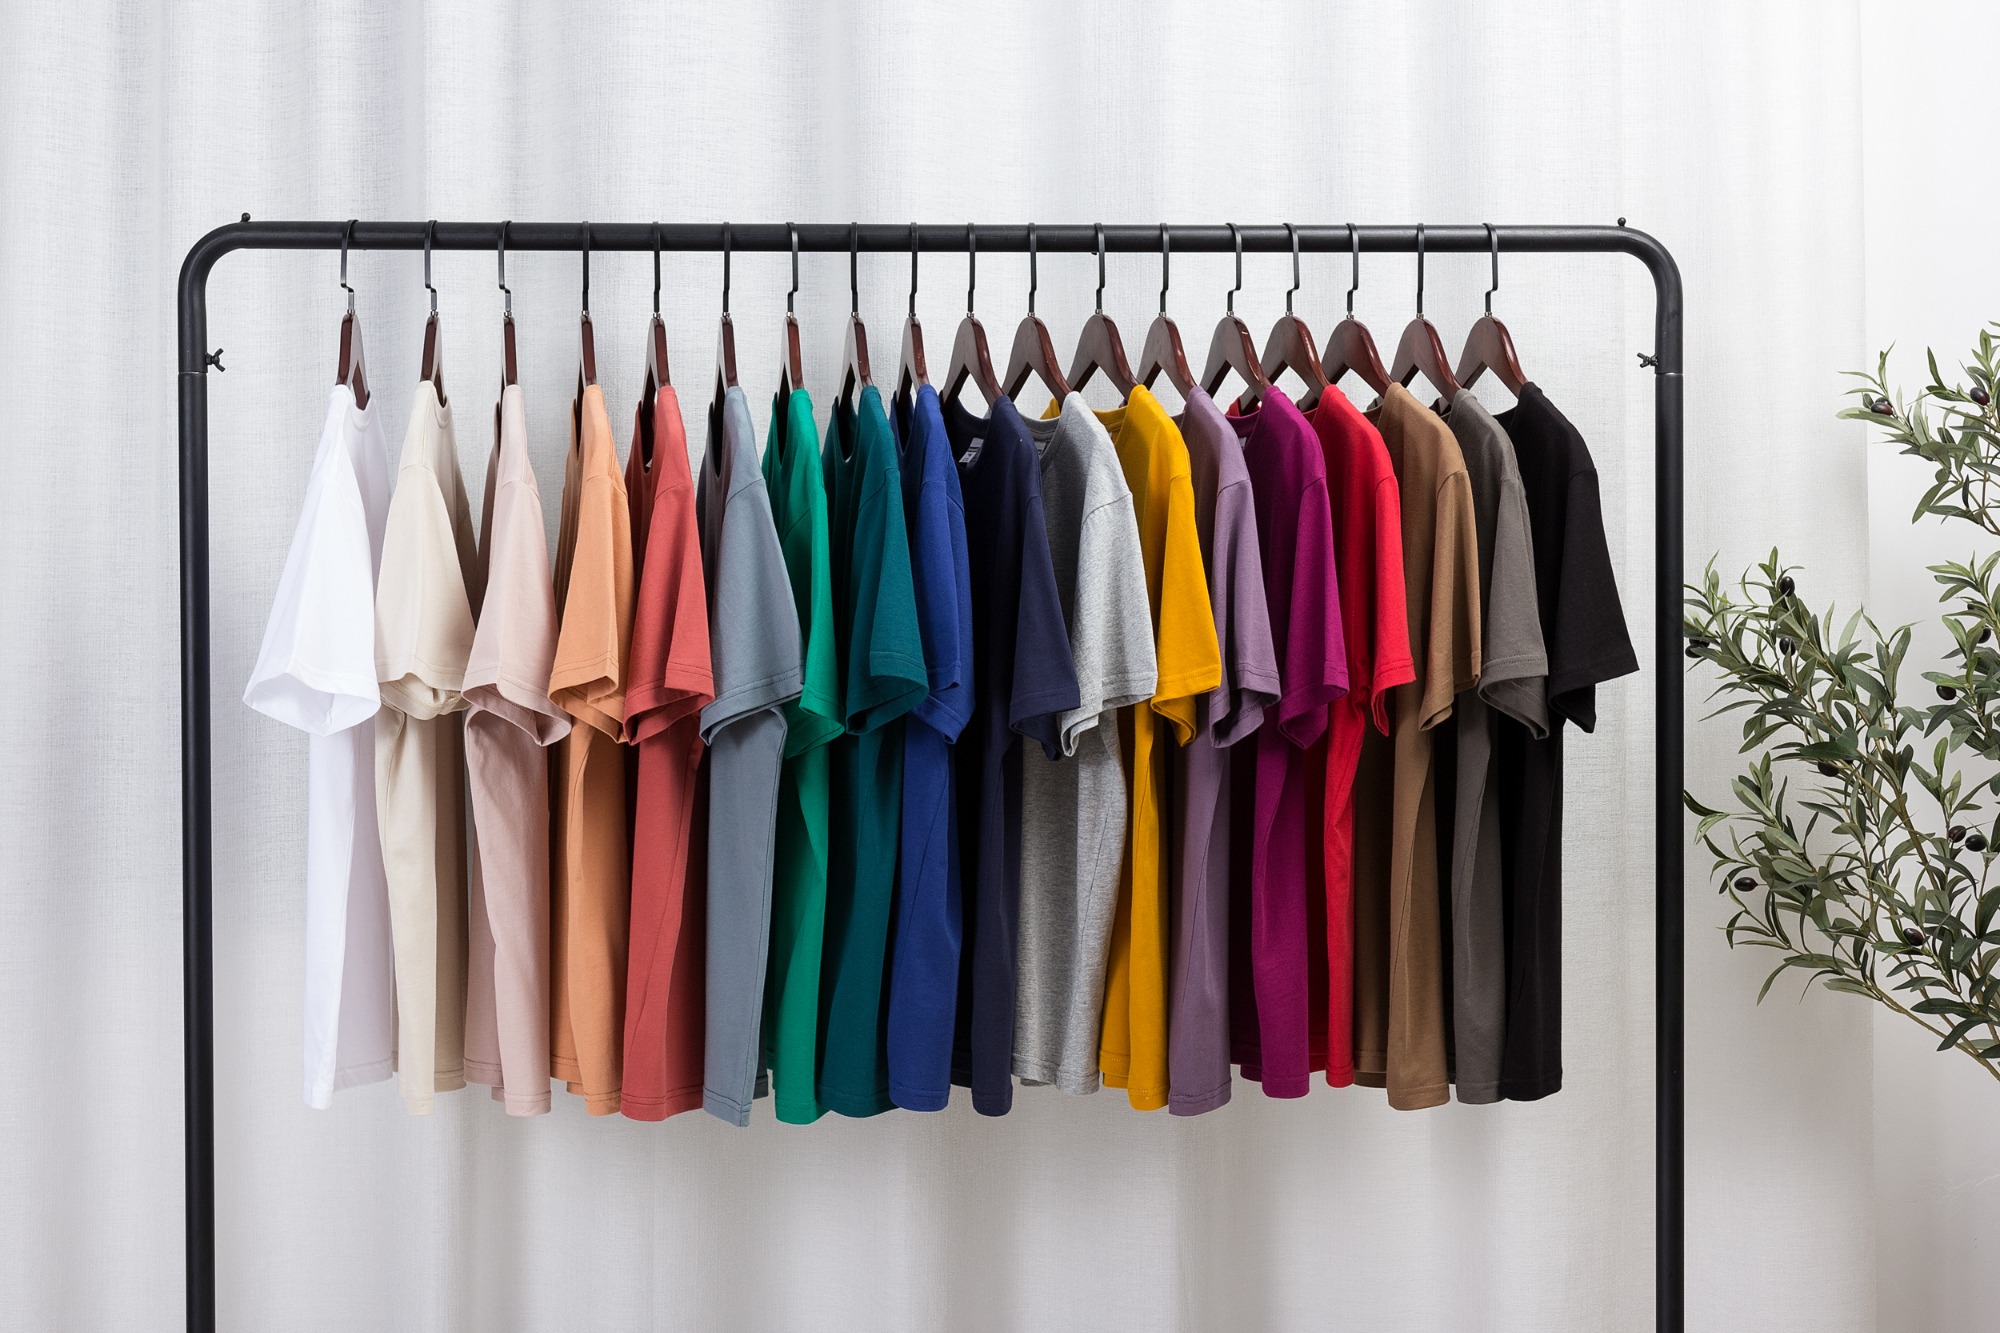 190G unisex basic cotton multi-color T-shirt,T-SHIRT & POLO